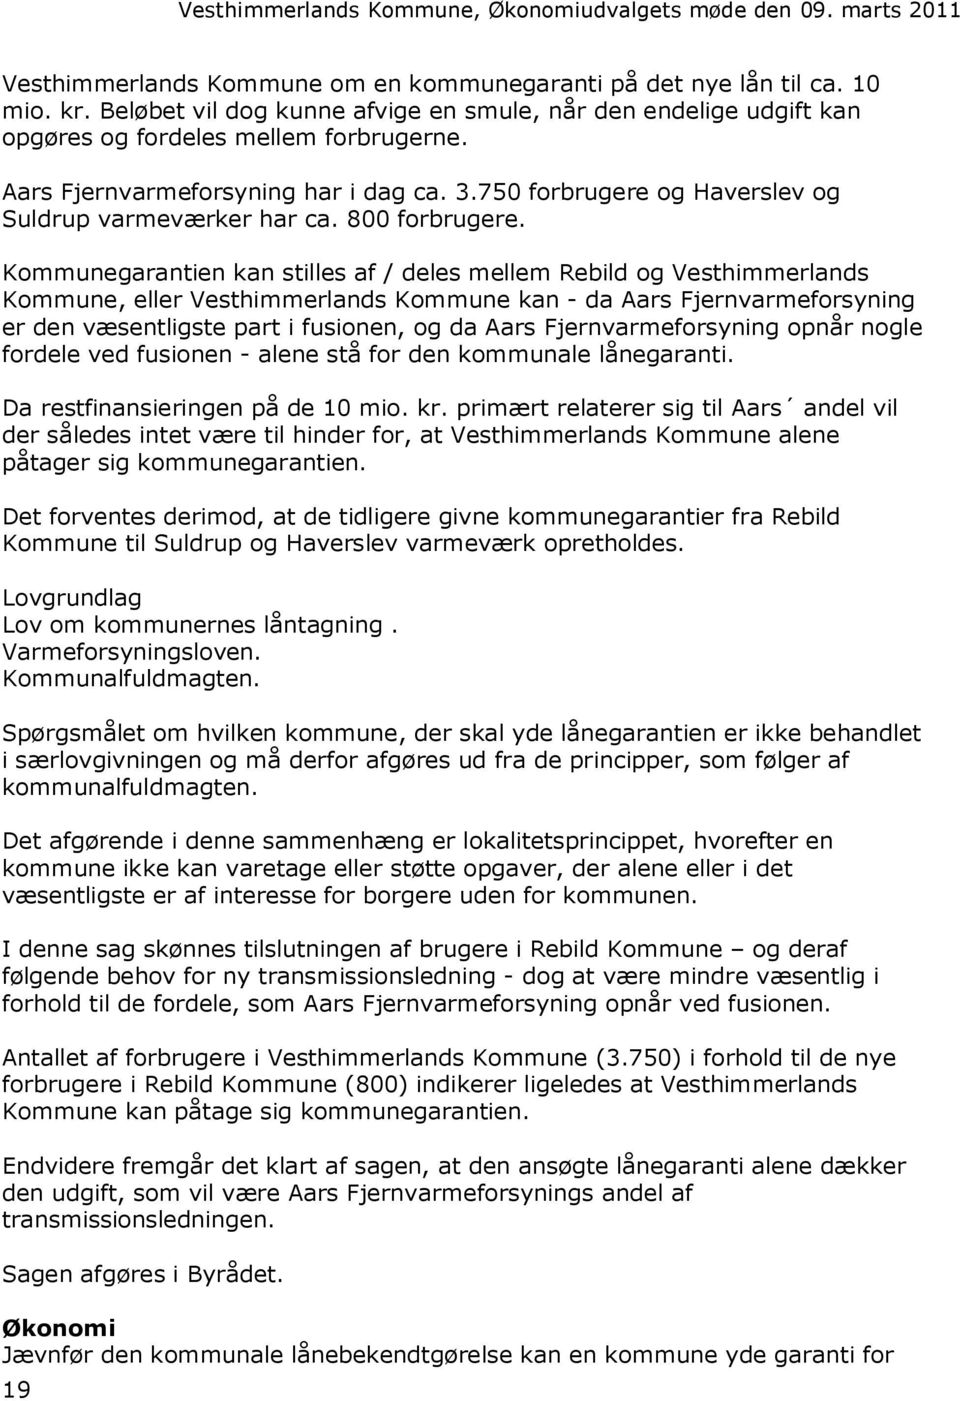 Kommunegarantien kan stilles af / deles mellem Rebild og Vesthimmerlands Kommune, eller Vesthimmerlands Kommune kan - da Aars Fjernvarmeforsyning er den væsentligste part i fusionen, og da Aars